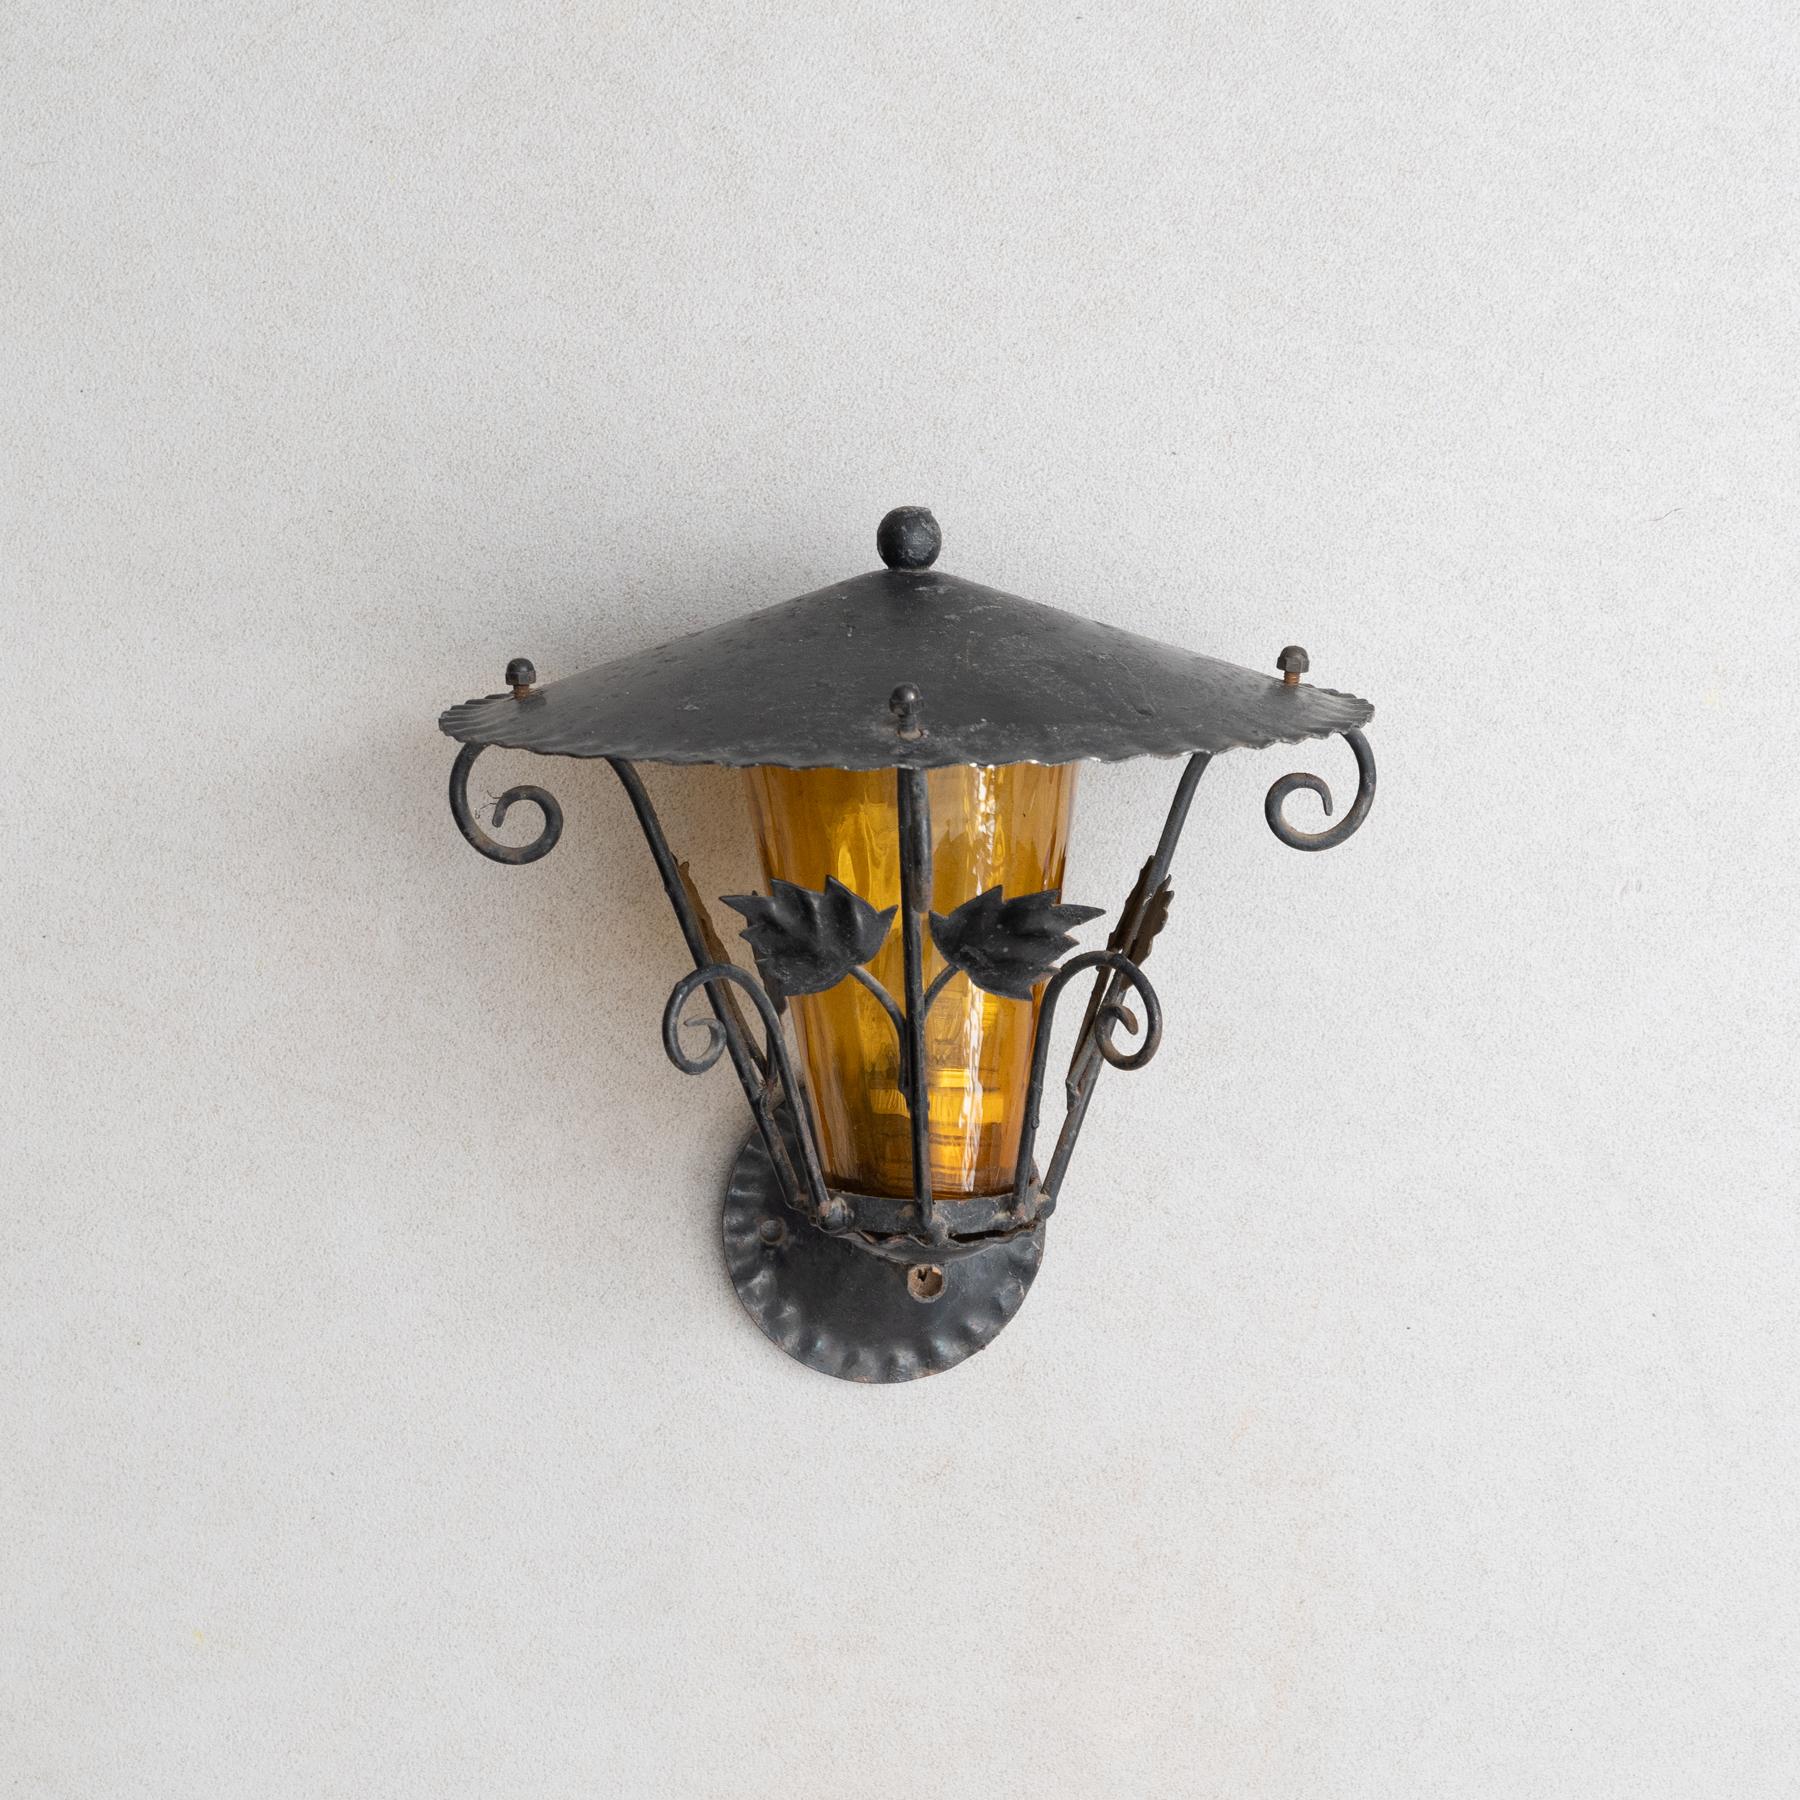 Antike Gartenwandlampe aus dem frühen 20. Jahrhundert.

Von unbekanntem Hersteller, Frankreich.

Originaler Zustand mit geringen alters- und gebrauchsbedingten Abnutzungserscheinungen, der eine schöne Patina aufweist.

Nicht